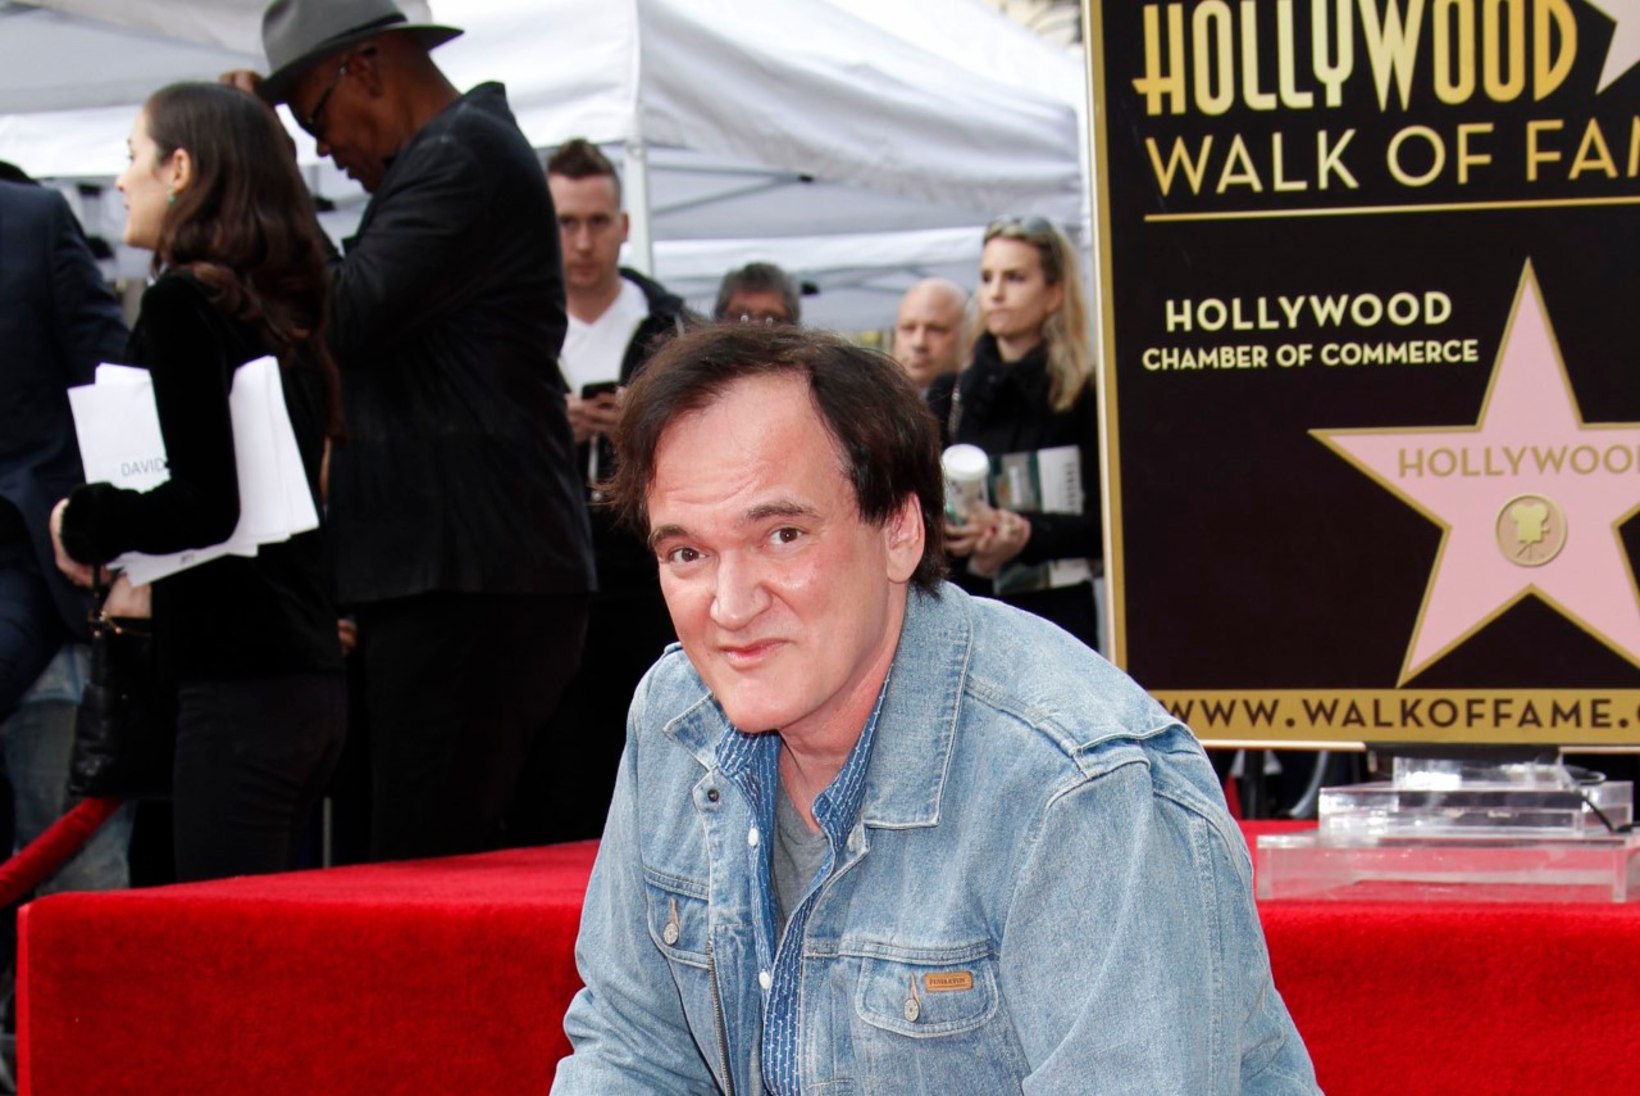 FOTOD | Quentin Tarantino sai tähe Hollywoodi kuulsuste alleel